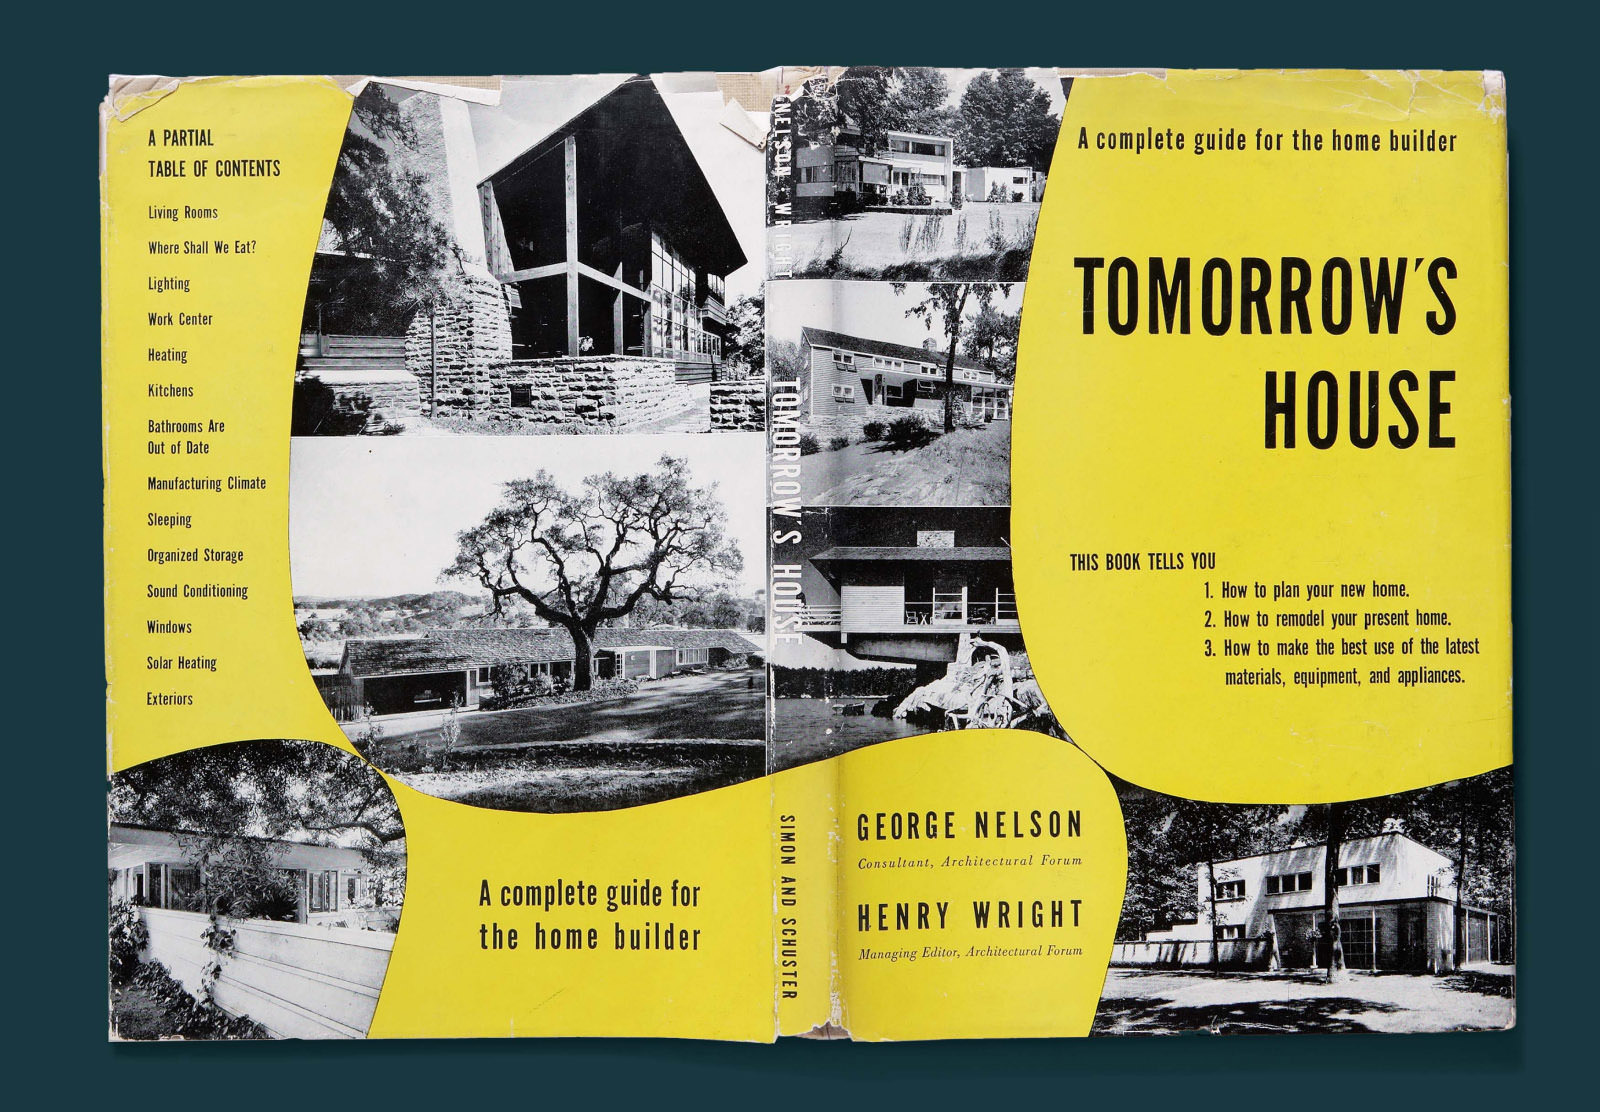 Tomorrow's Houseのブックカバーの表面と裏面。モダンな住宅を撮ったモノクロの写真がある変則的な黄色を背景に、黒のテキストで本のタイトル、著者、目次が記されている